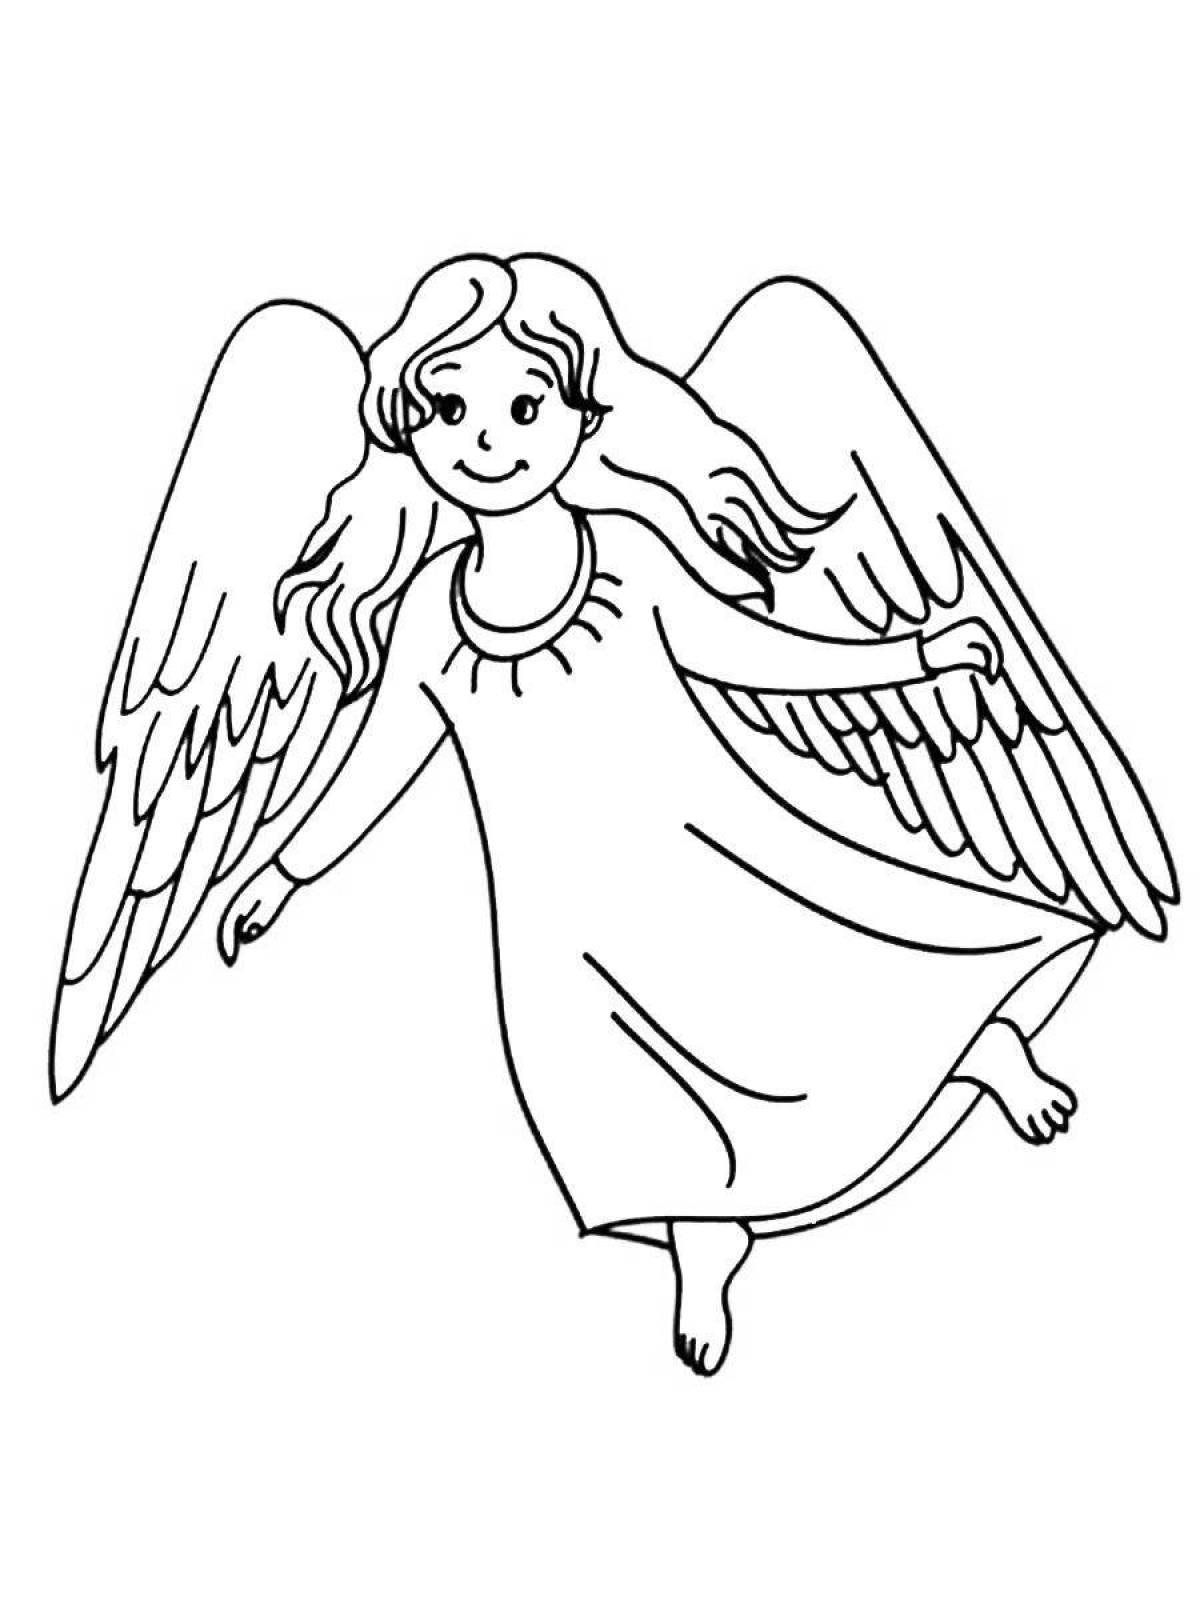 Лучистая раскраска ангел с крыльями для детей